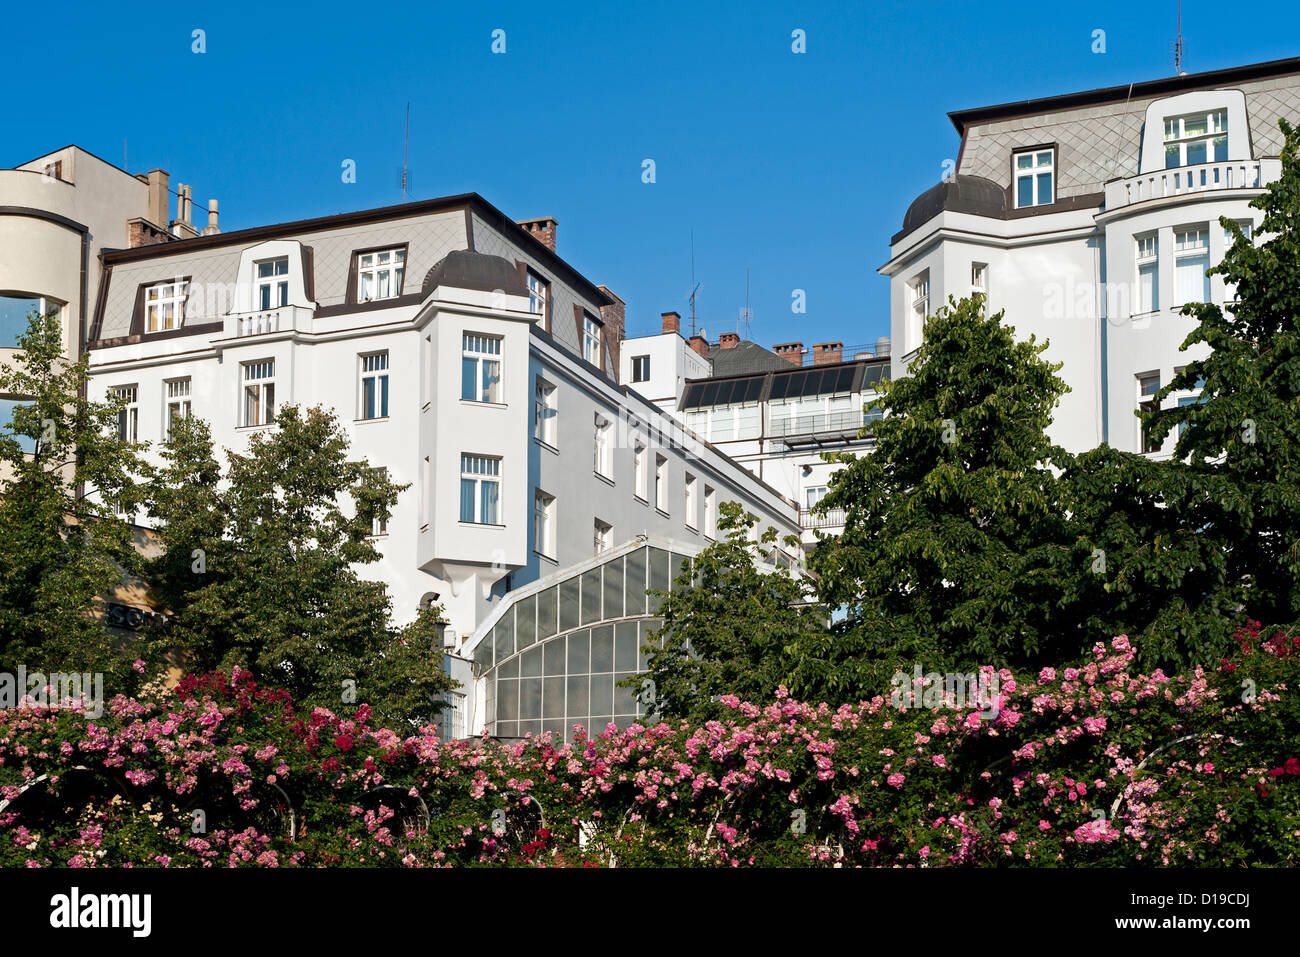 Praga - la secessione degli edifici nel giardino con rose Foto Stock